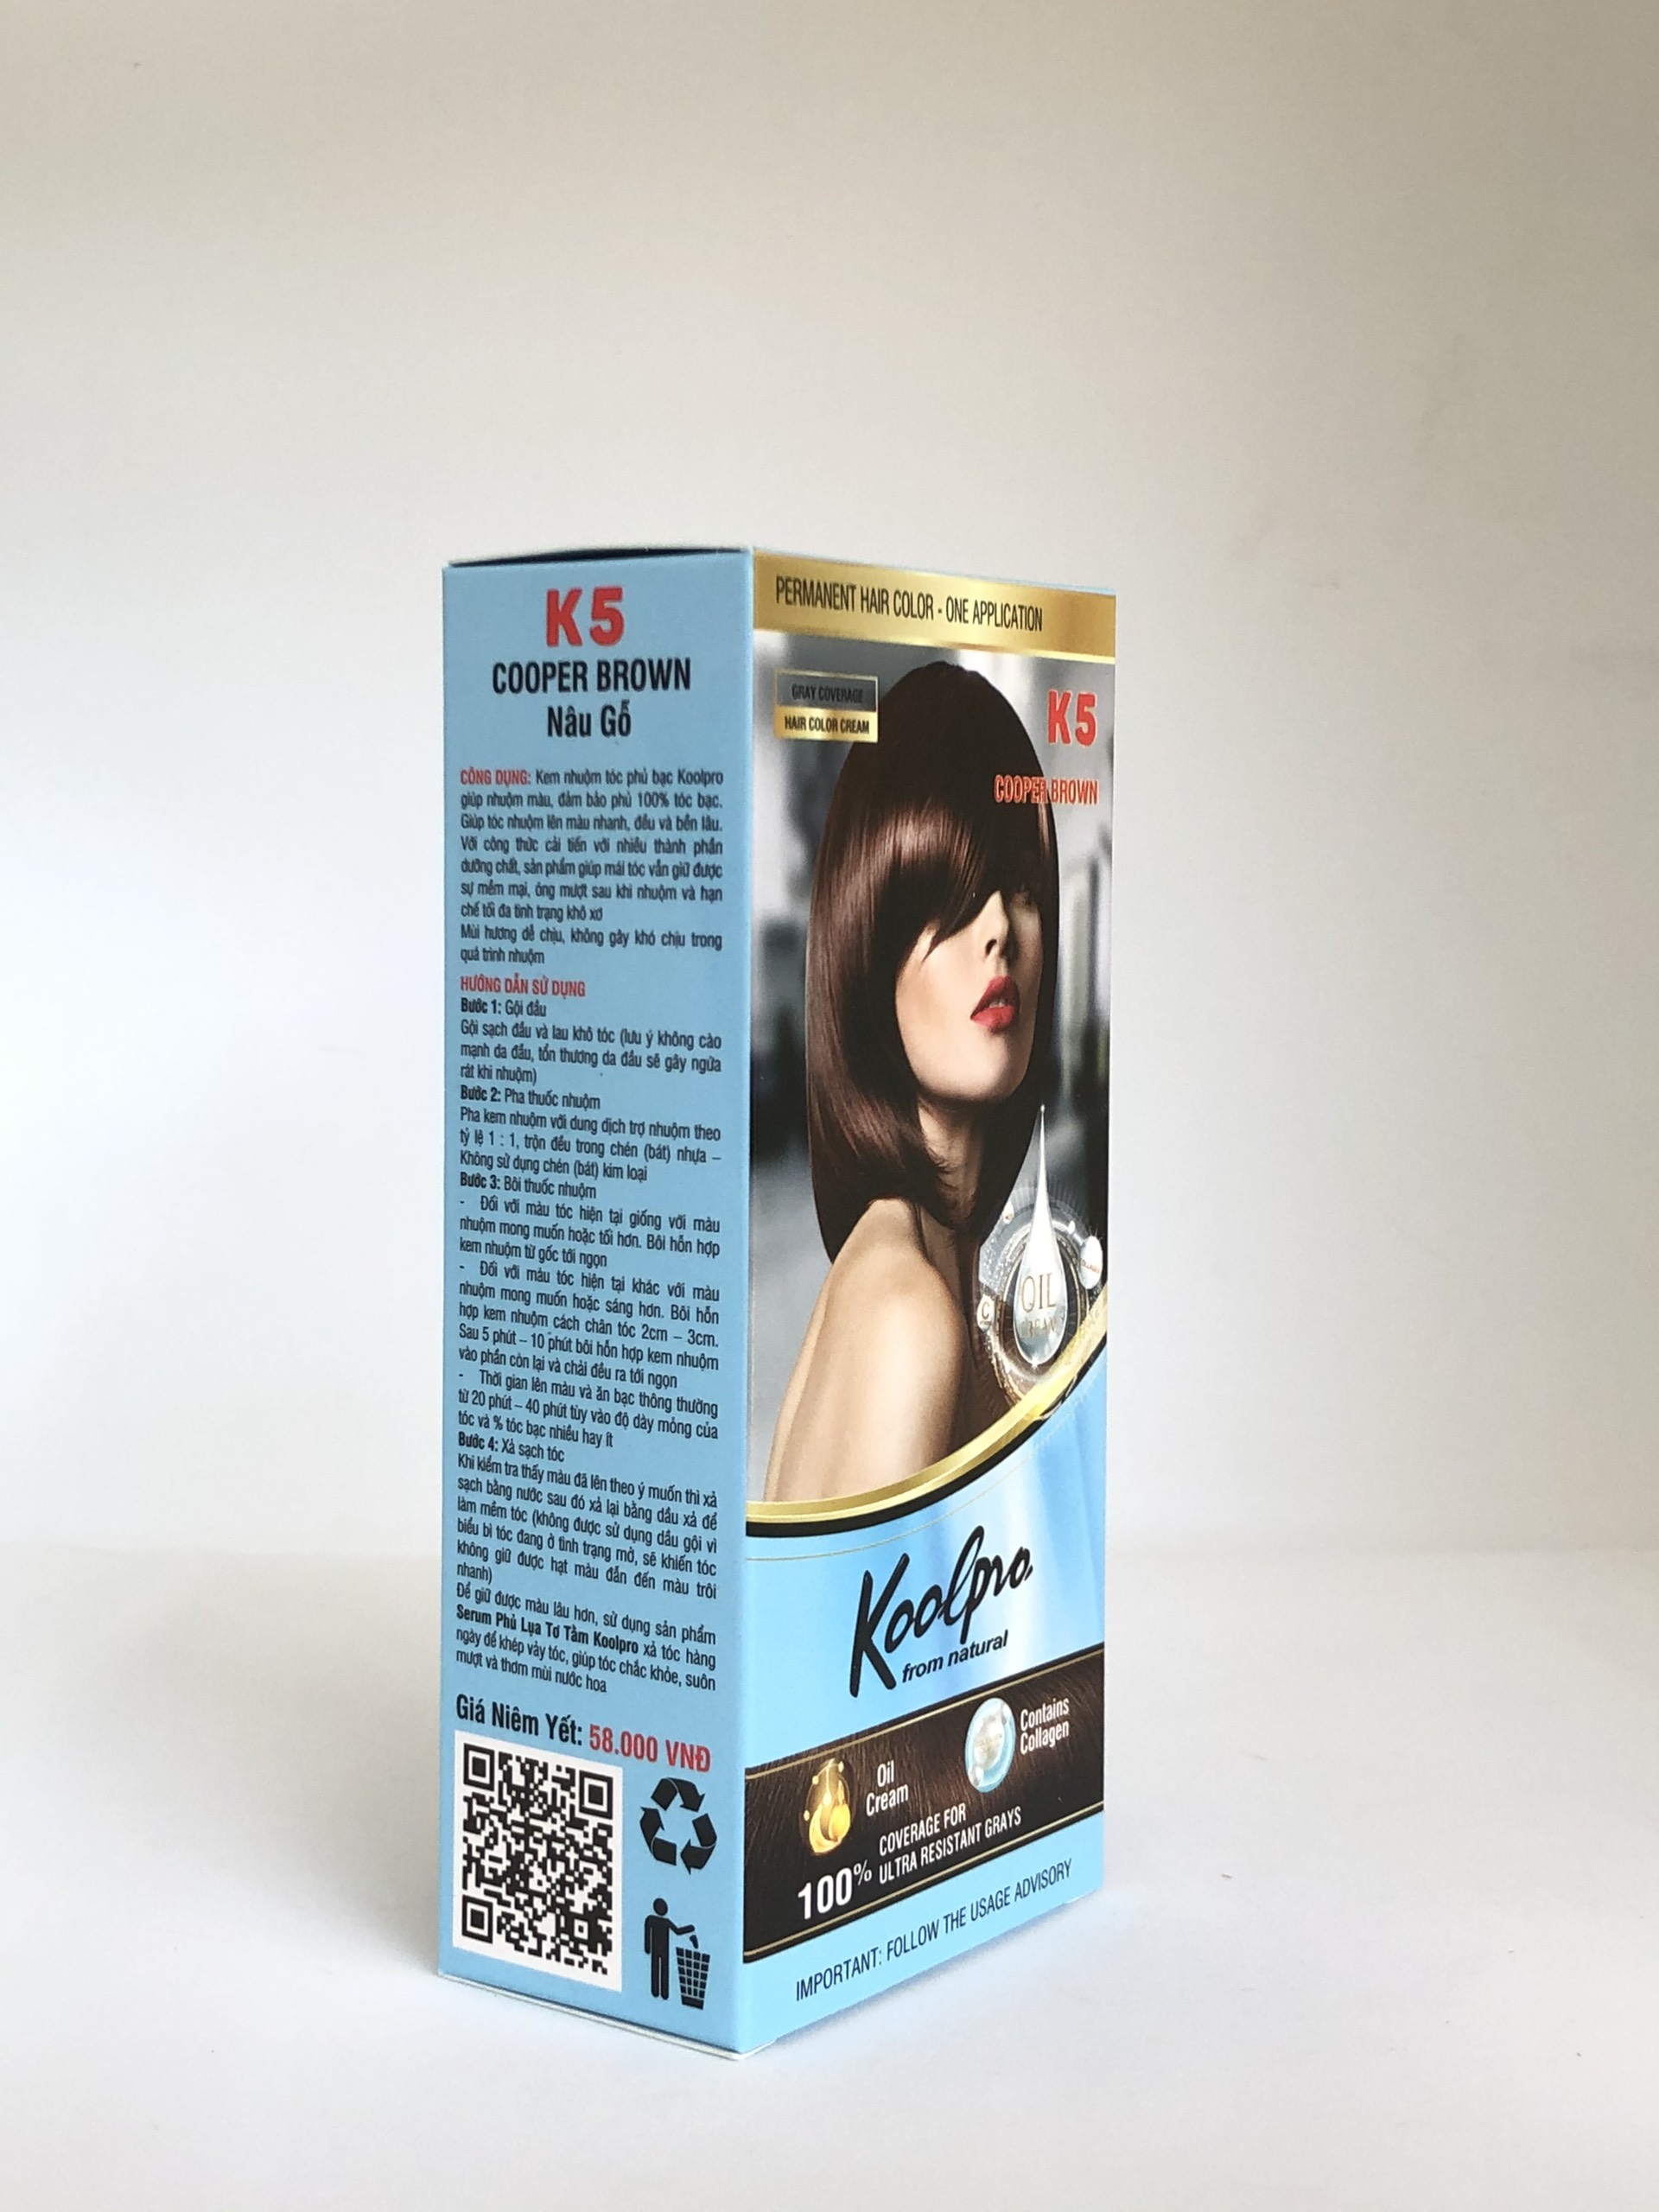 Cùng khám phá thế giới màu sắc đa dạng của tóc với thuốc nhuộm tóc Koolpro. Được chiết xuất từ thiên nhiên, sản phẩm mang đến màu sắc sáng đẹp và bền cho mái tóc của bạn.